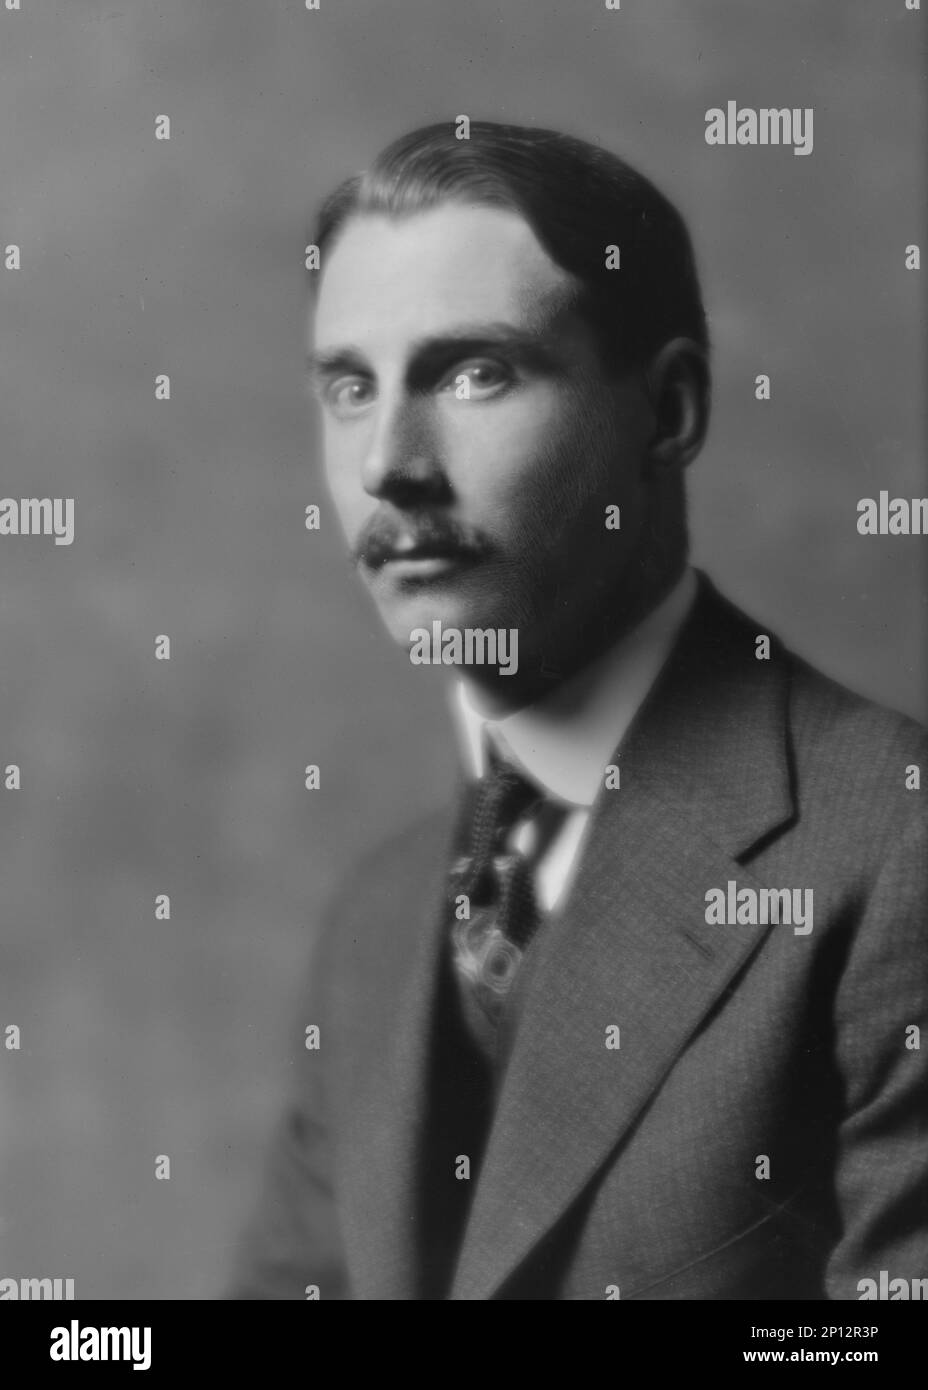 Schoomaker, H.S., Mr., portrait photograph, 1916 Feb. 28. Stock Photo